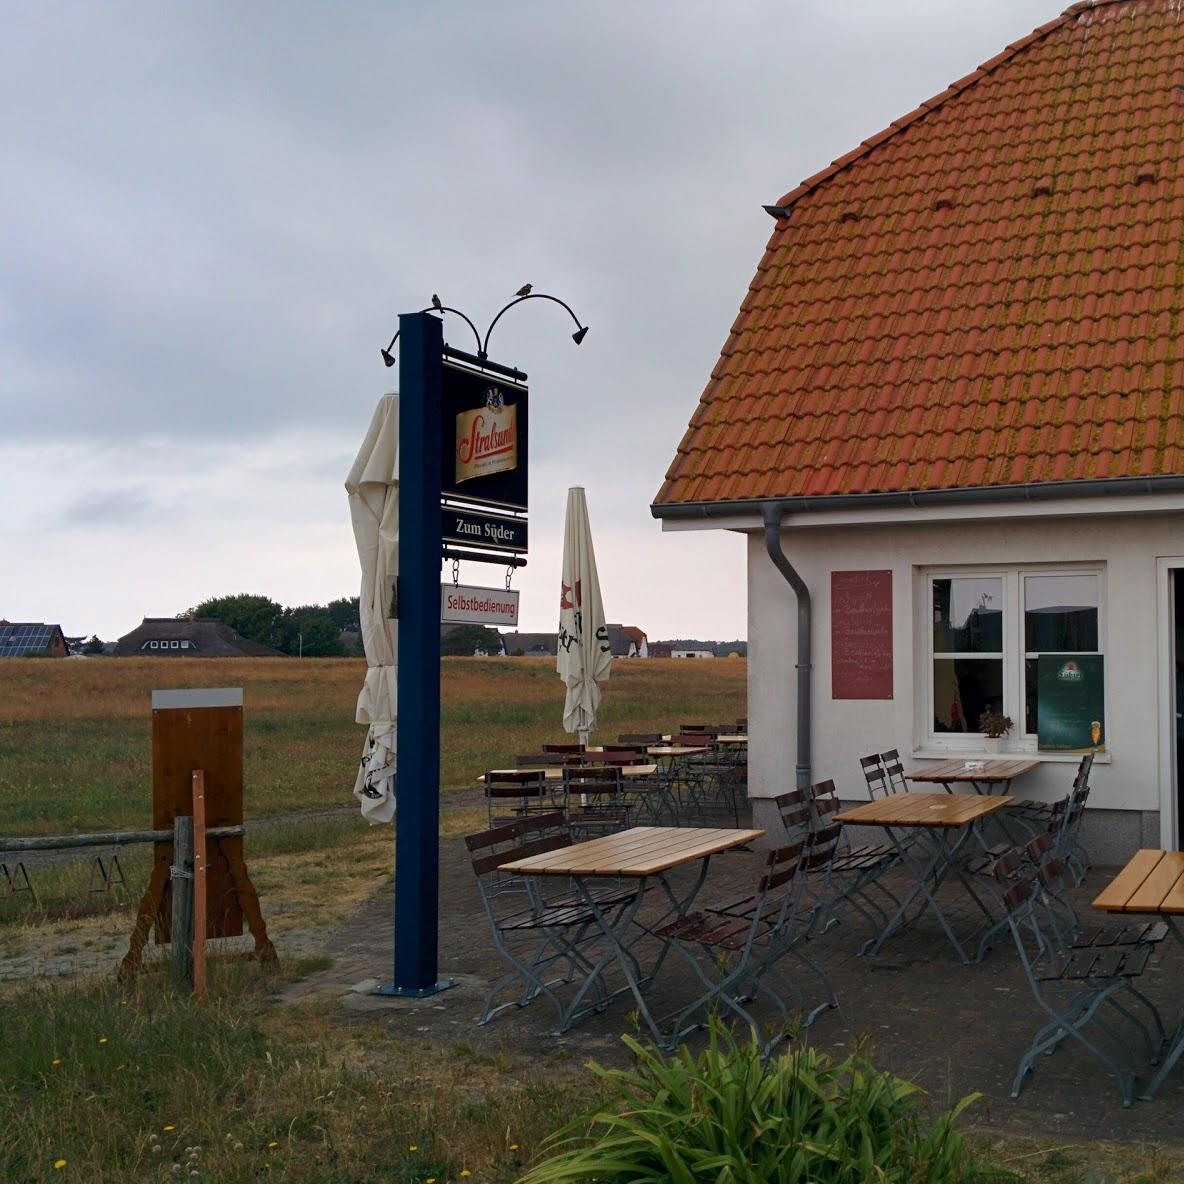 Restaurant "Fischimbiss  Zum Süder " in Insel Hiddensee